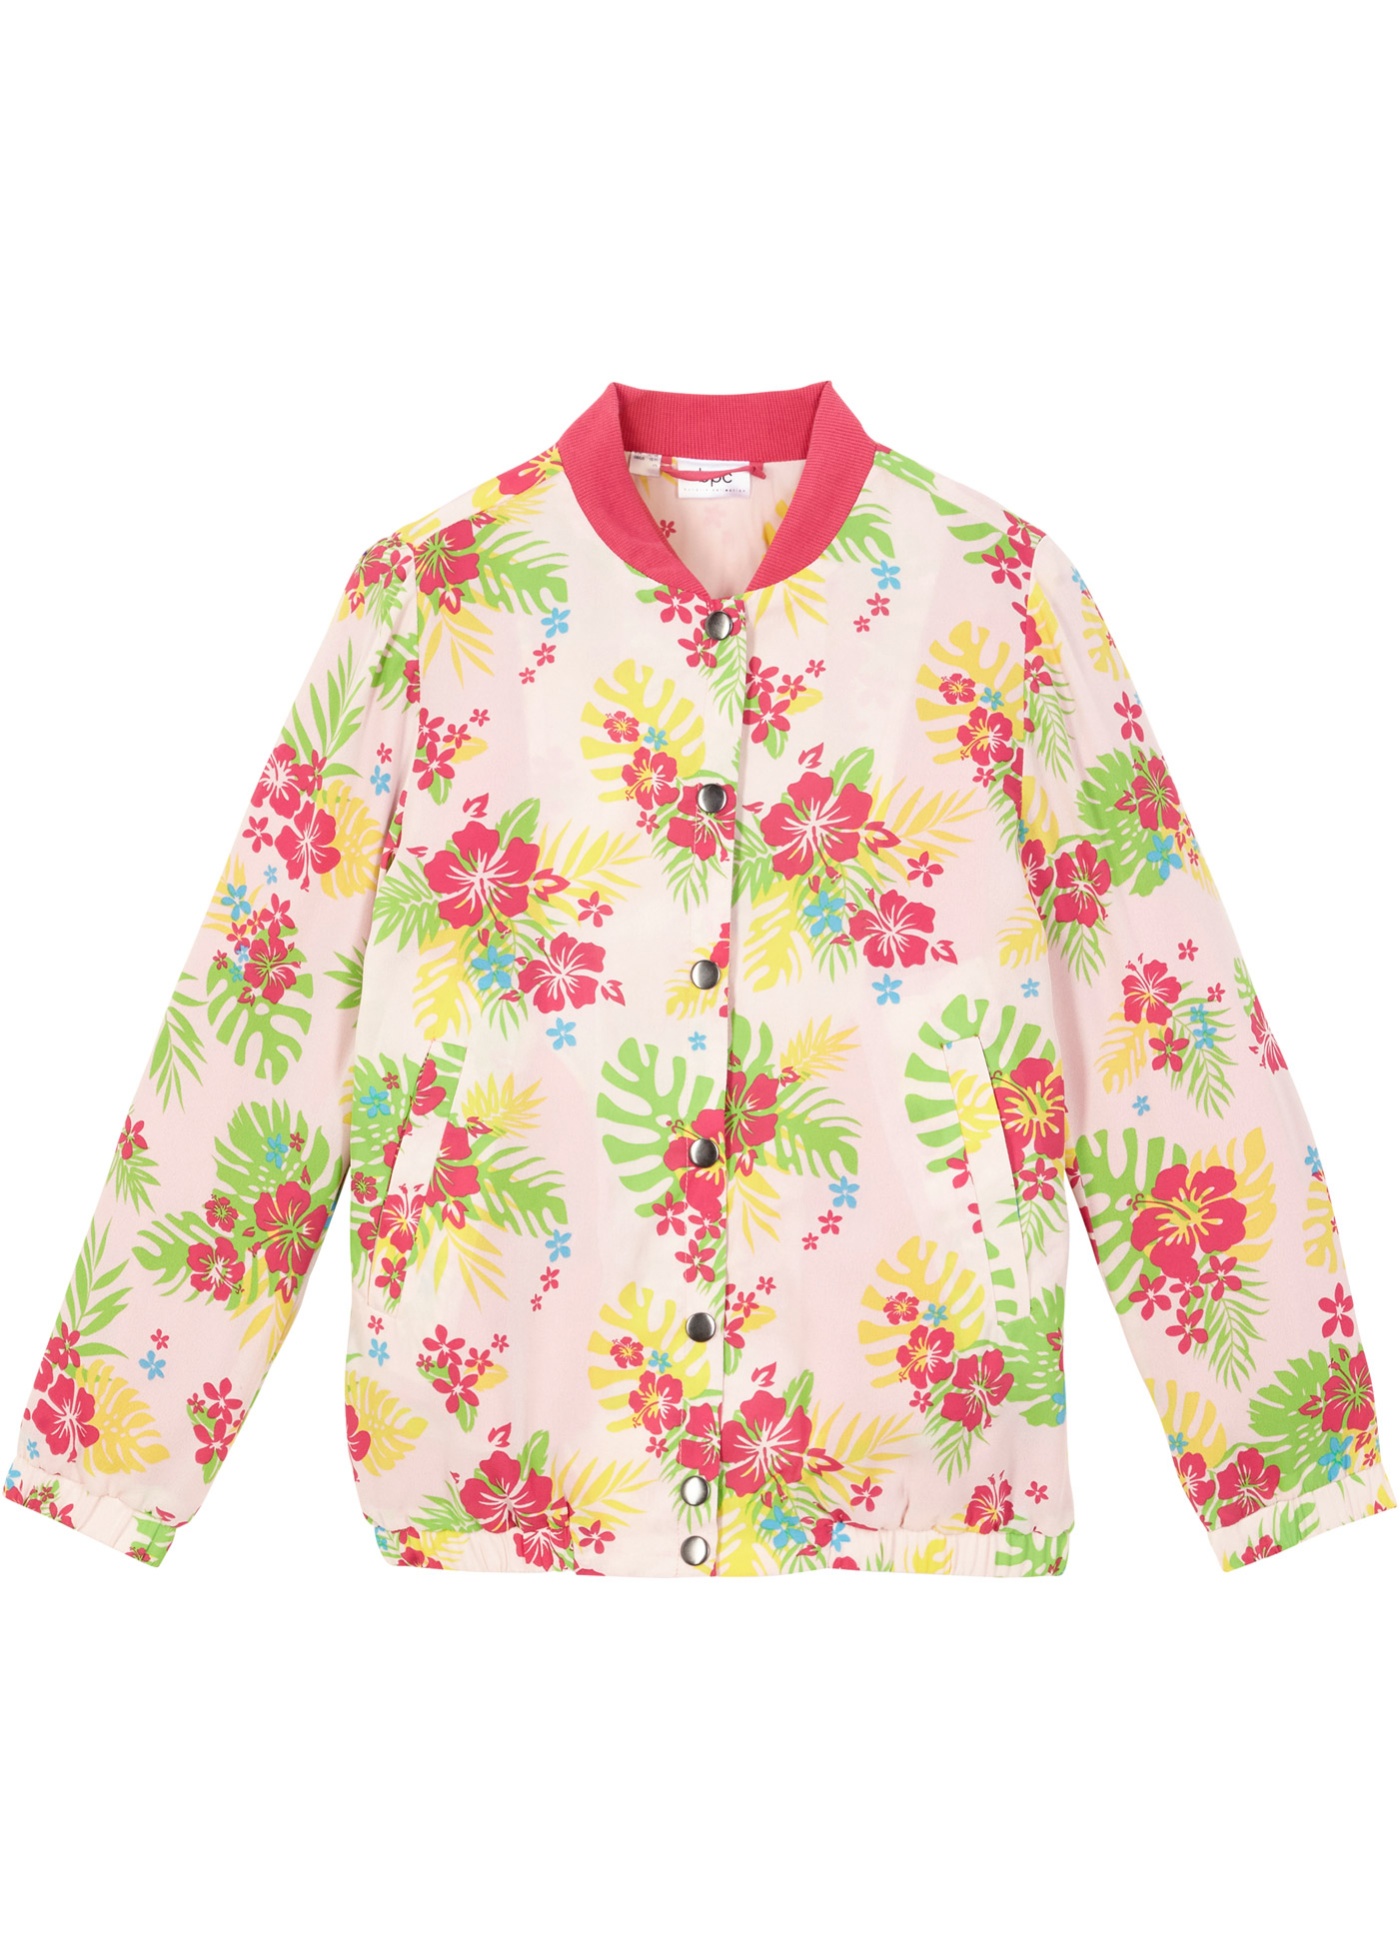 Dievčenský bluzón s kvetovanou potlačou